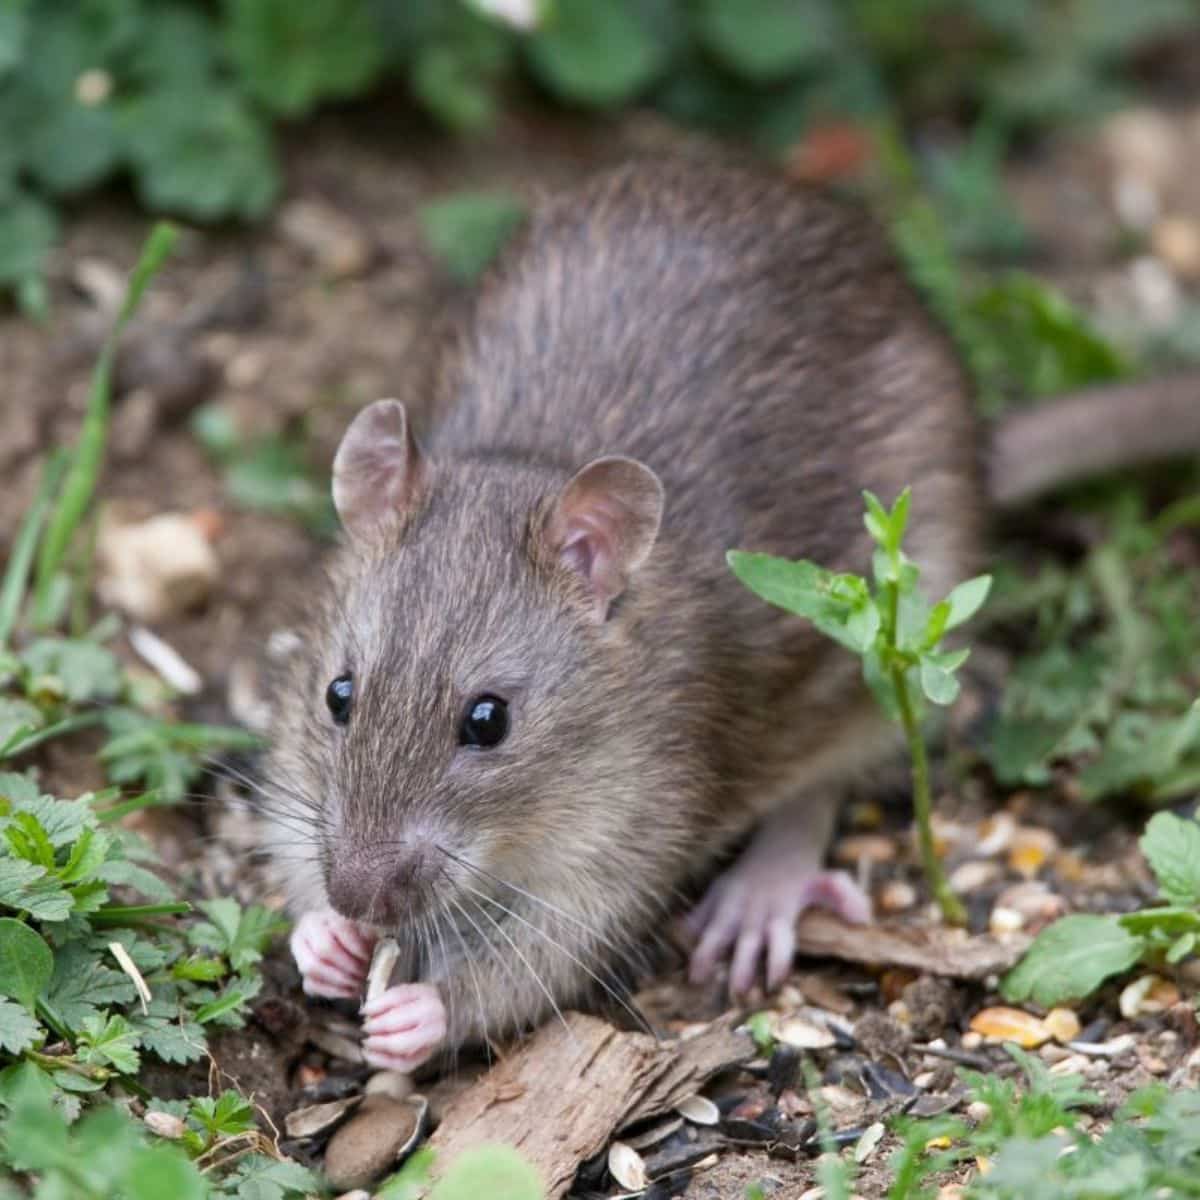 Wild brown rat eating seeds.